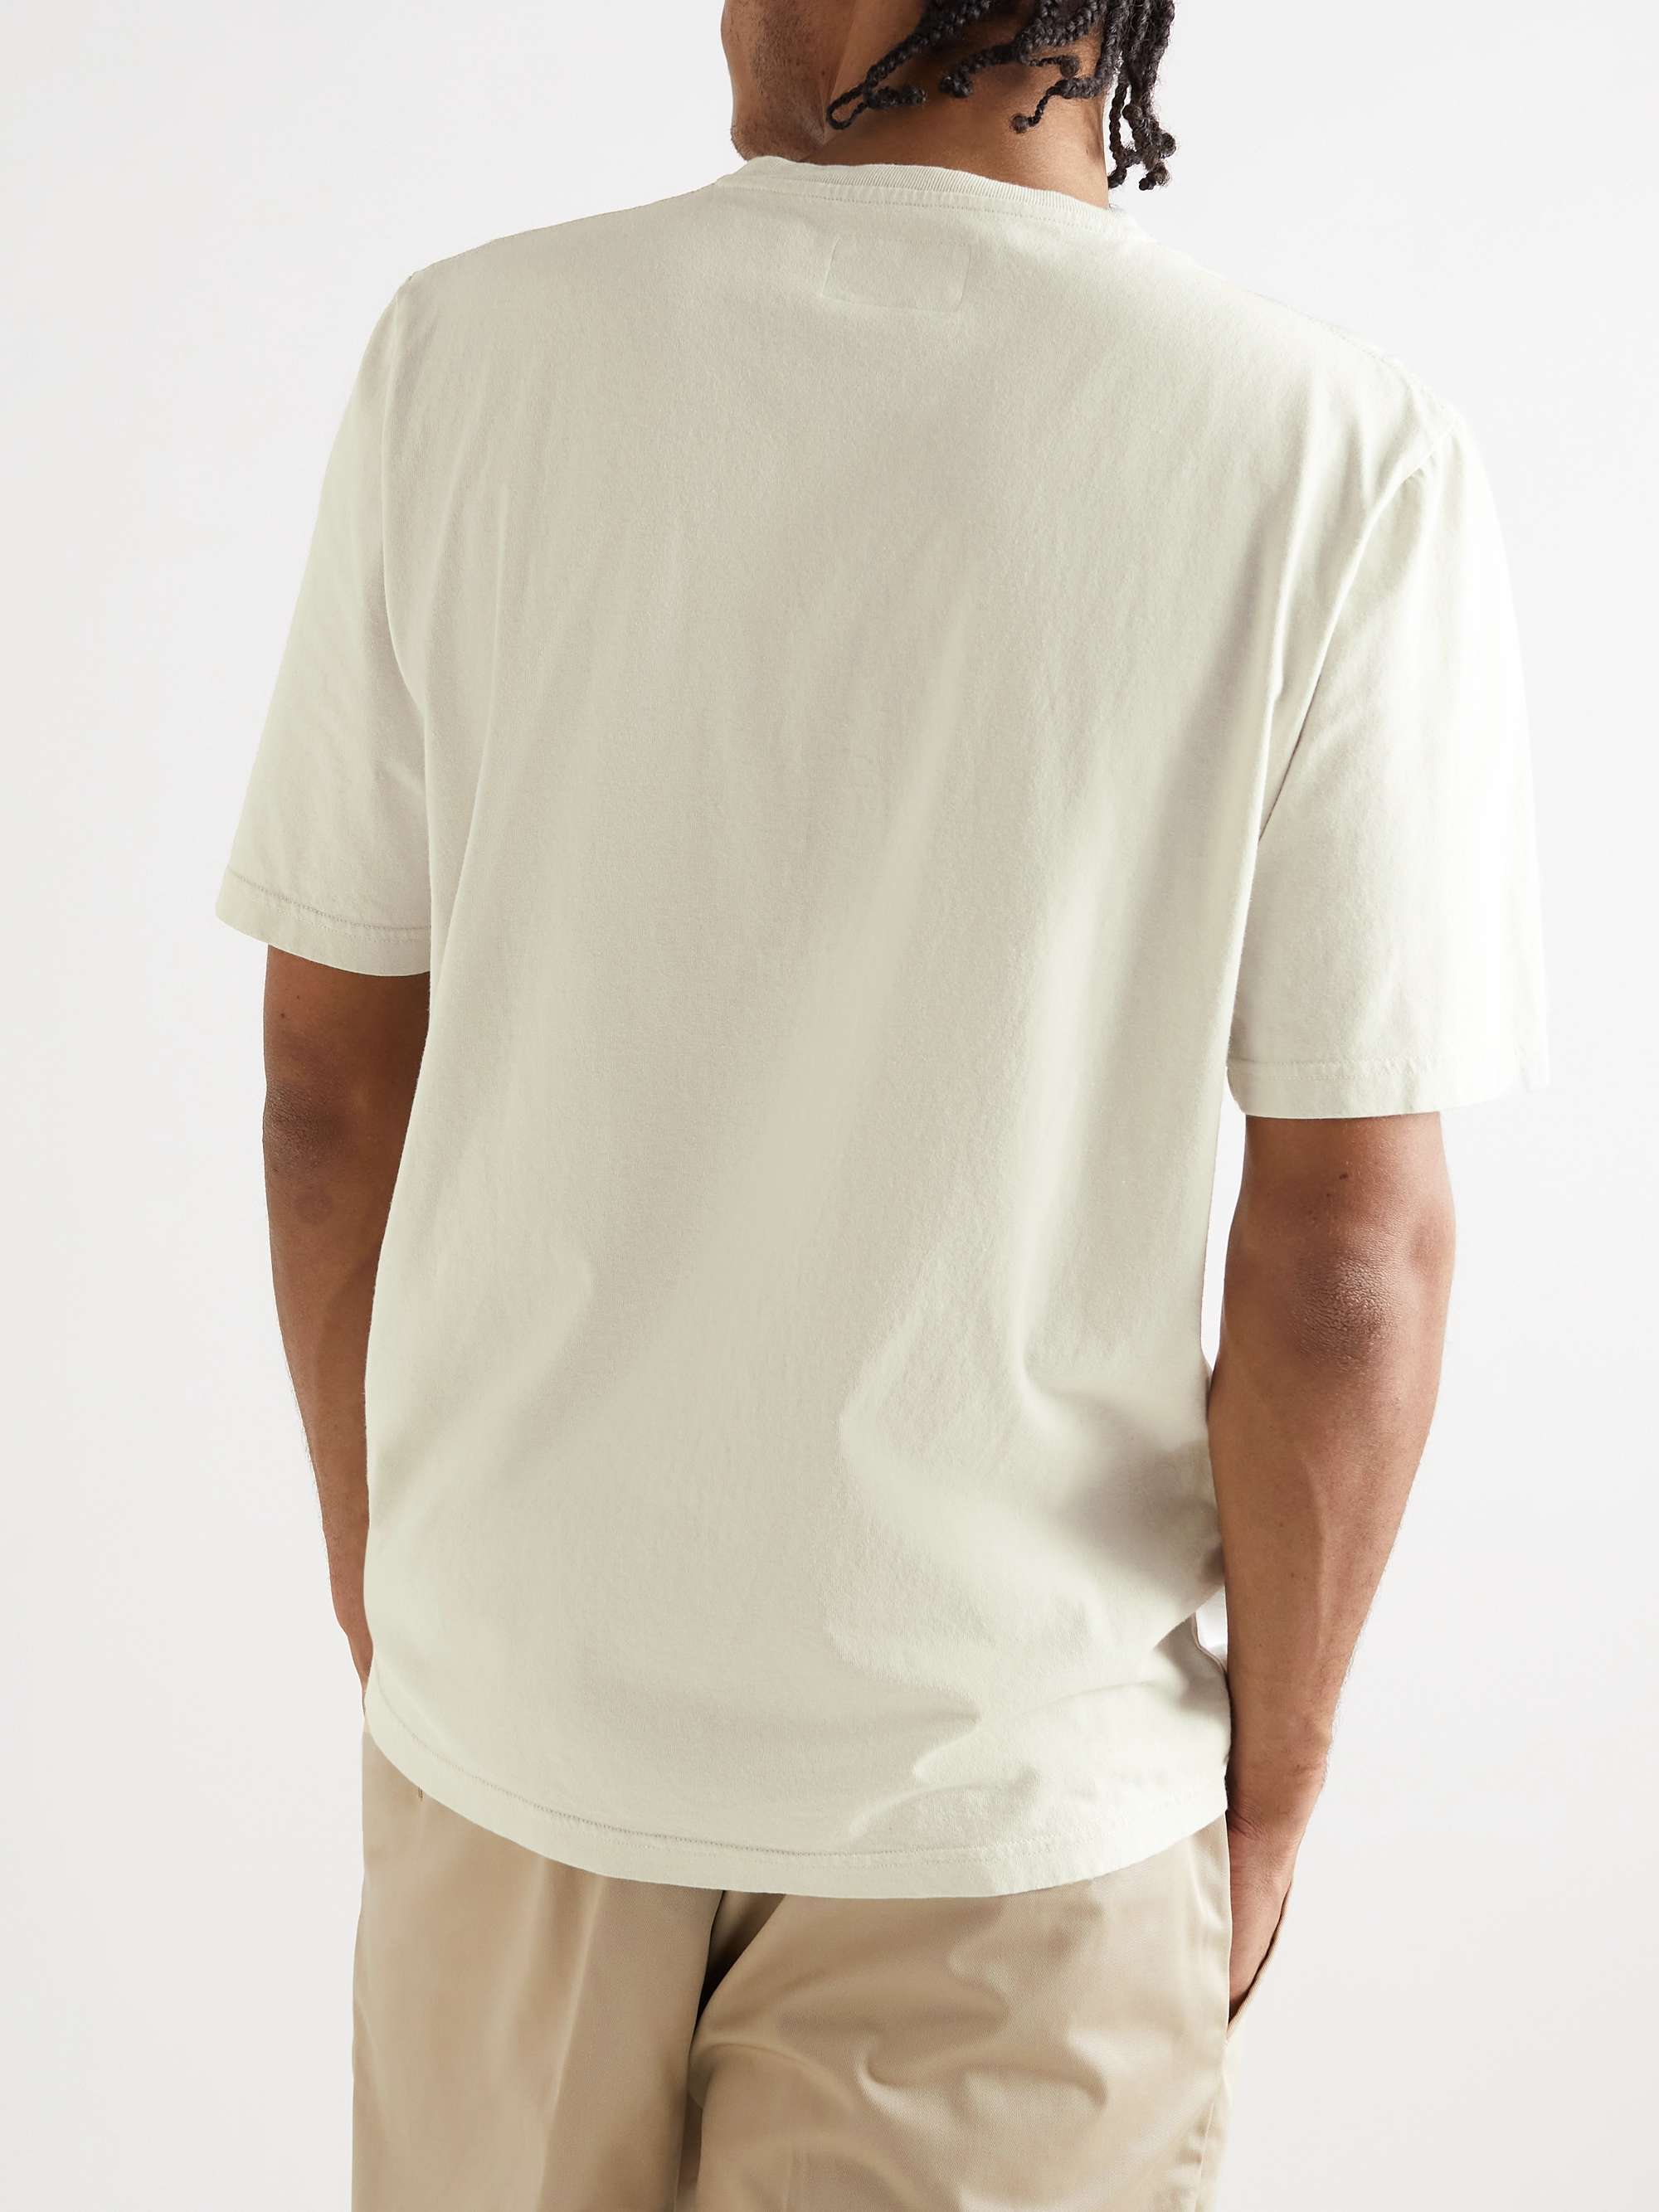 FOLK Assembly Cotton-Jersey T-Shirt